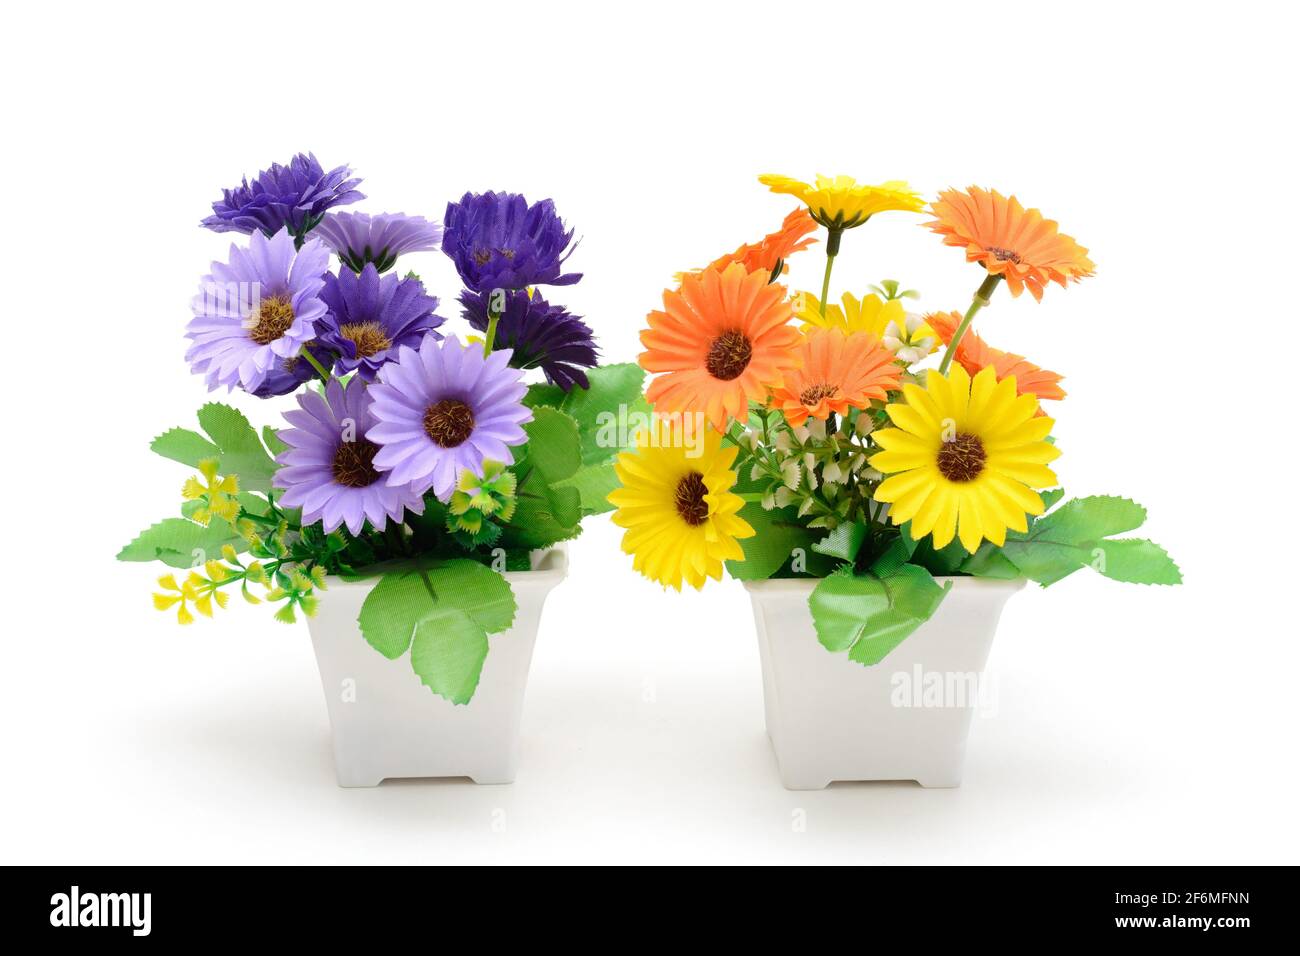 Zwei blühende Pflanzen in Töpfen. Gerbera ist violett und gelb. Inneneinrichtung. Isoliert auf weißem Hintergrund. Stockfoto